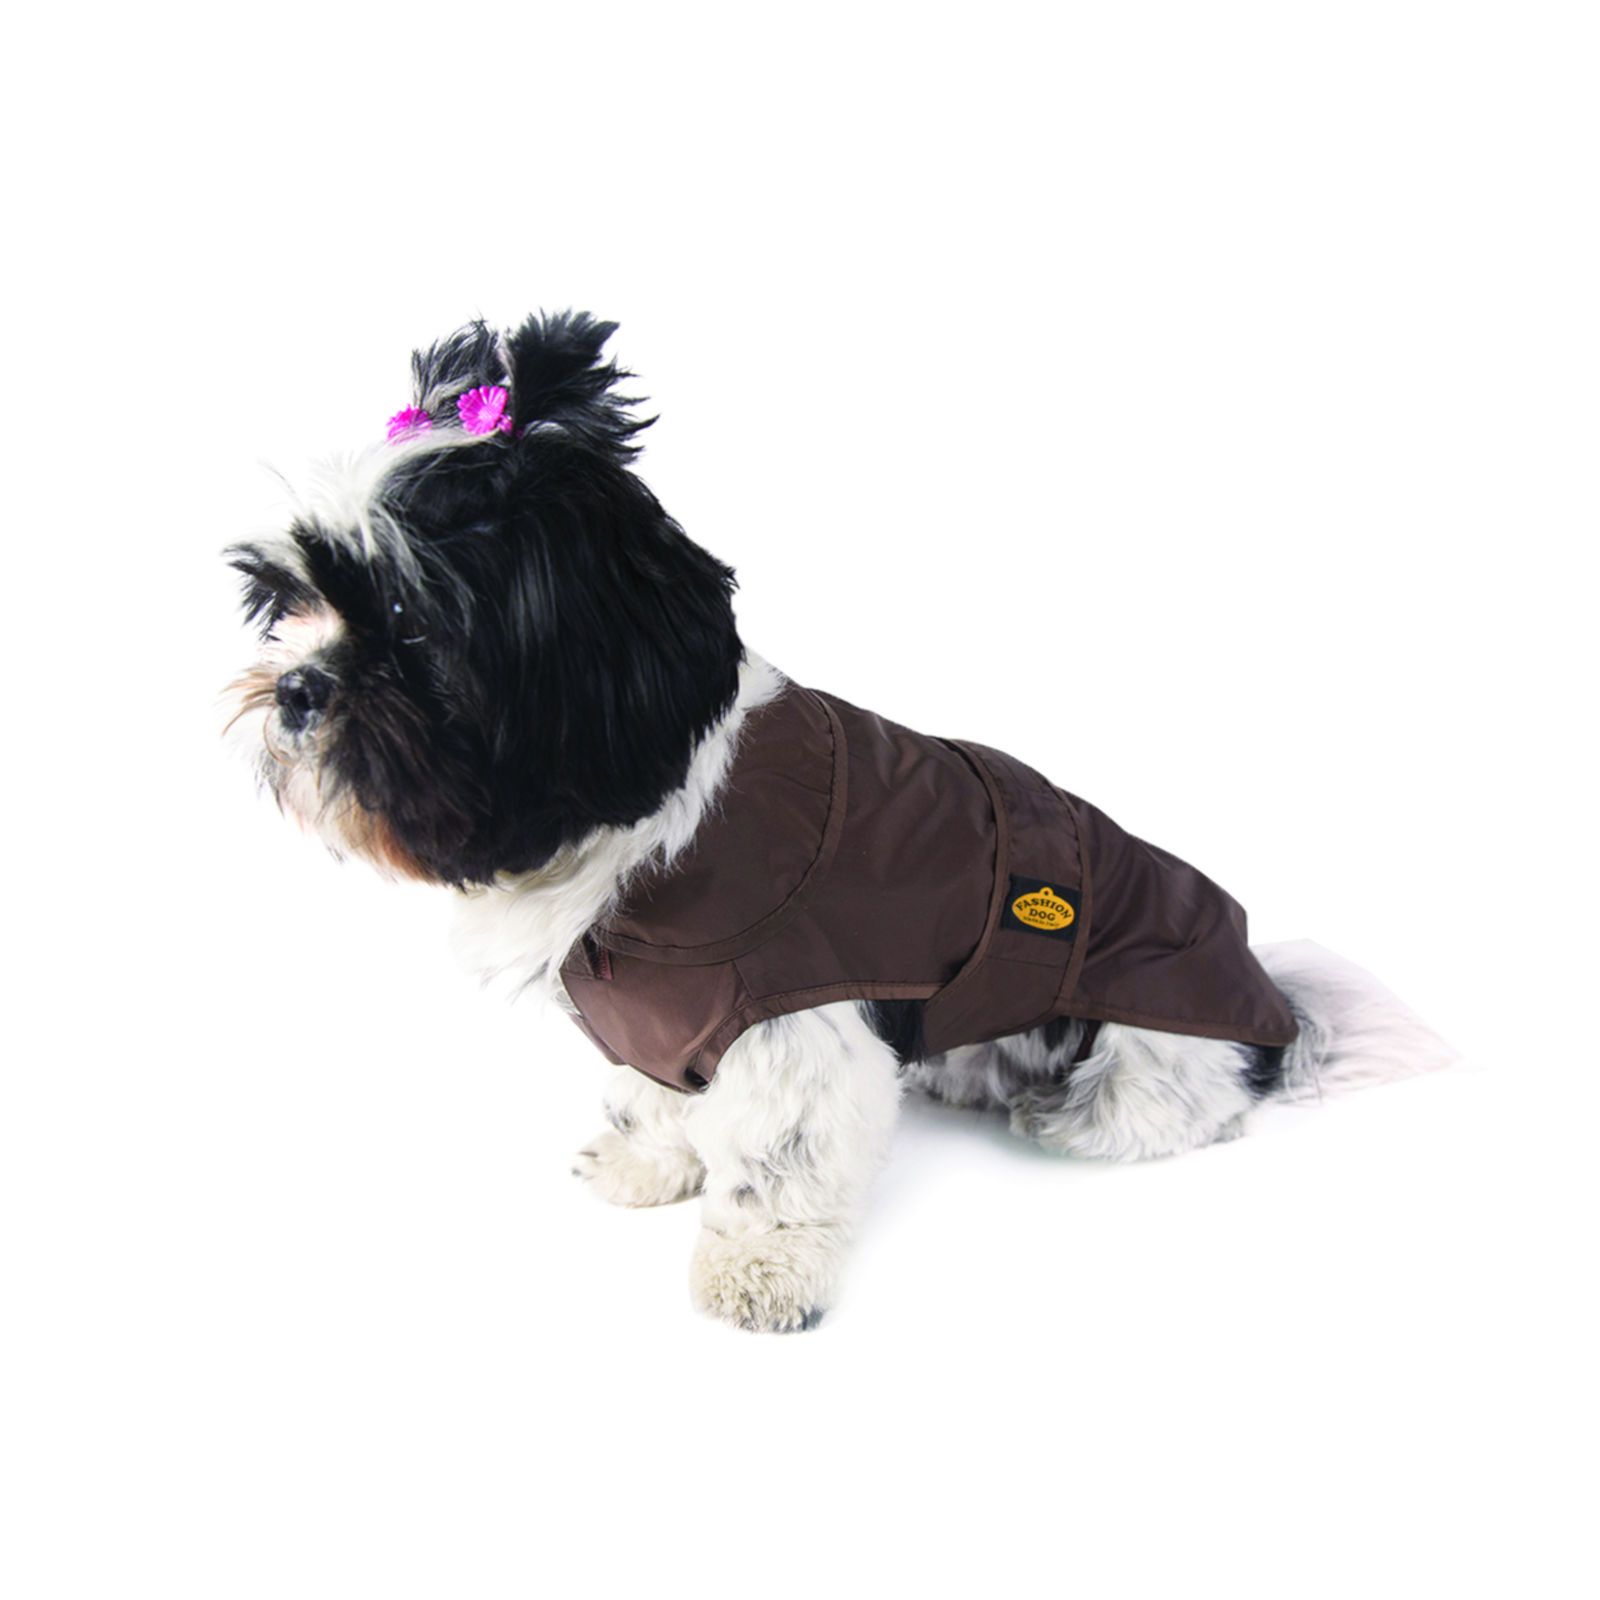 Fashion Dog Regenmantel für Hunde - Braun - 43 cm